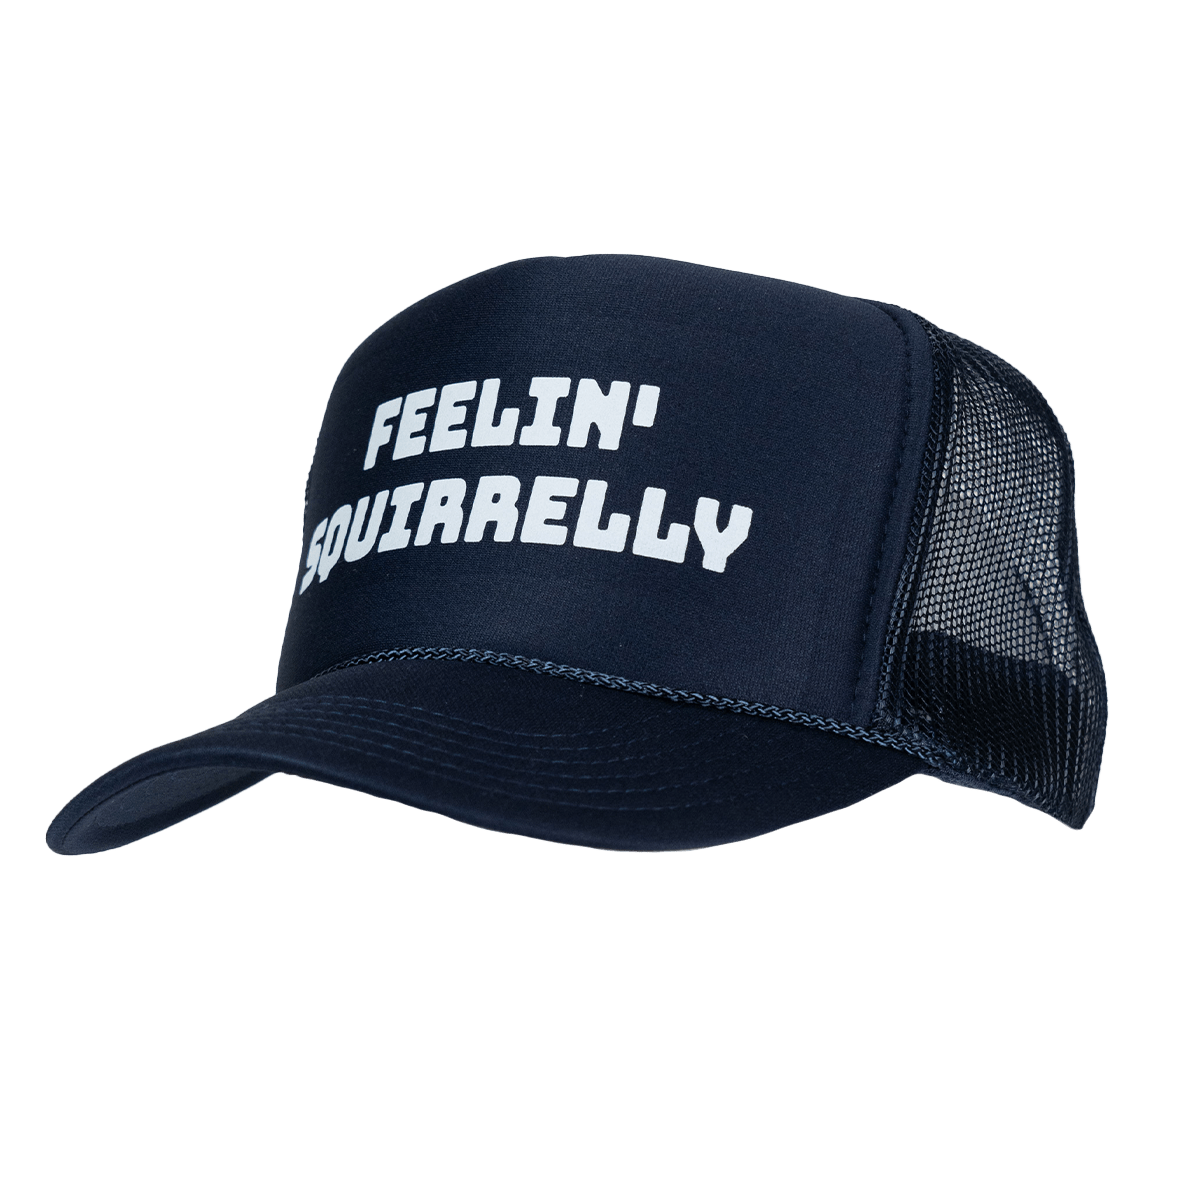 Feelin' Squirrelly Hat - You Betcha